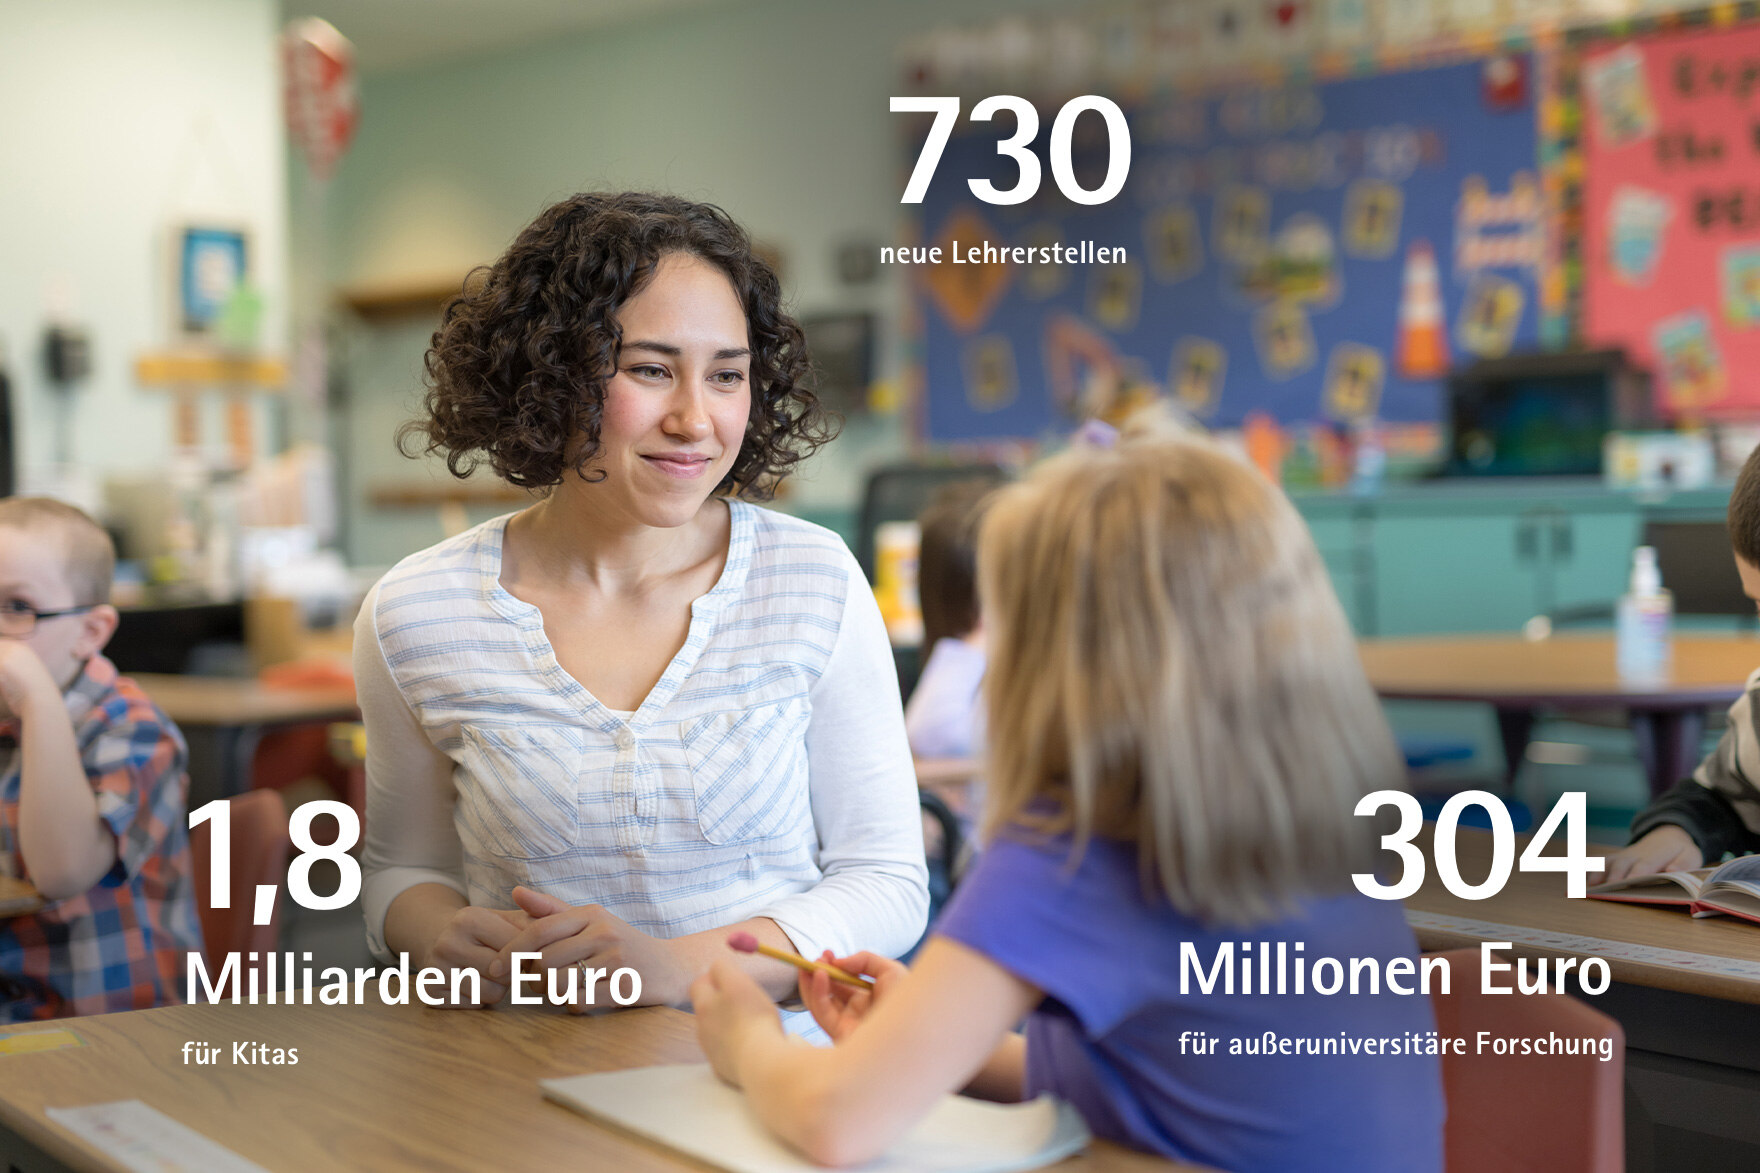 730 neue Lehrerstellen, 1,8 Milliarden Euro für Kitas, 304 Millionen Euro für außeruniversitäre Forschung